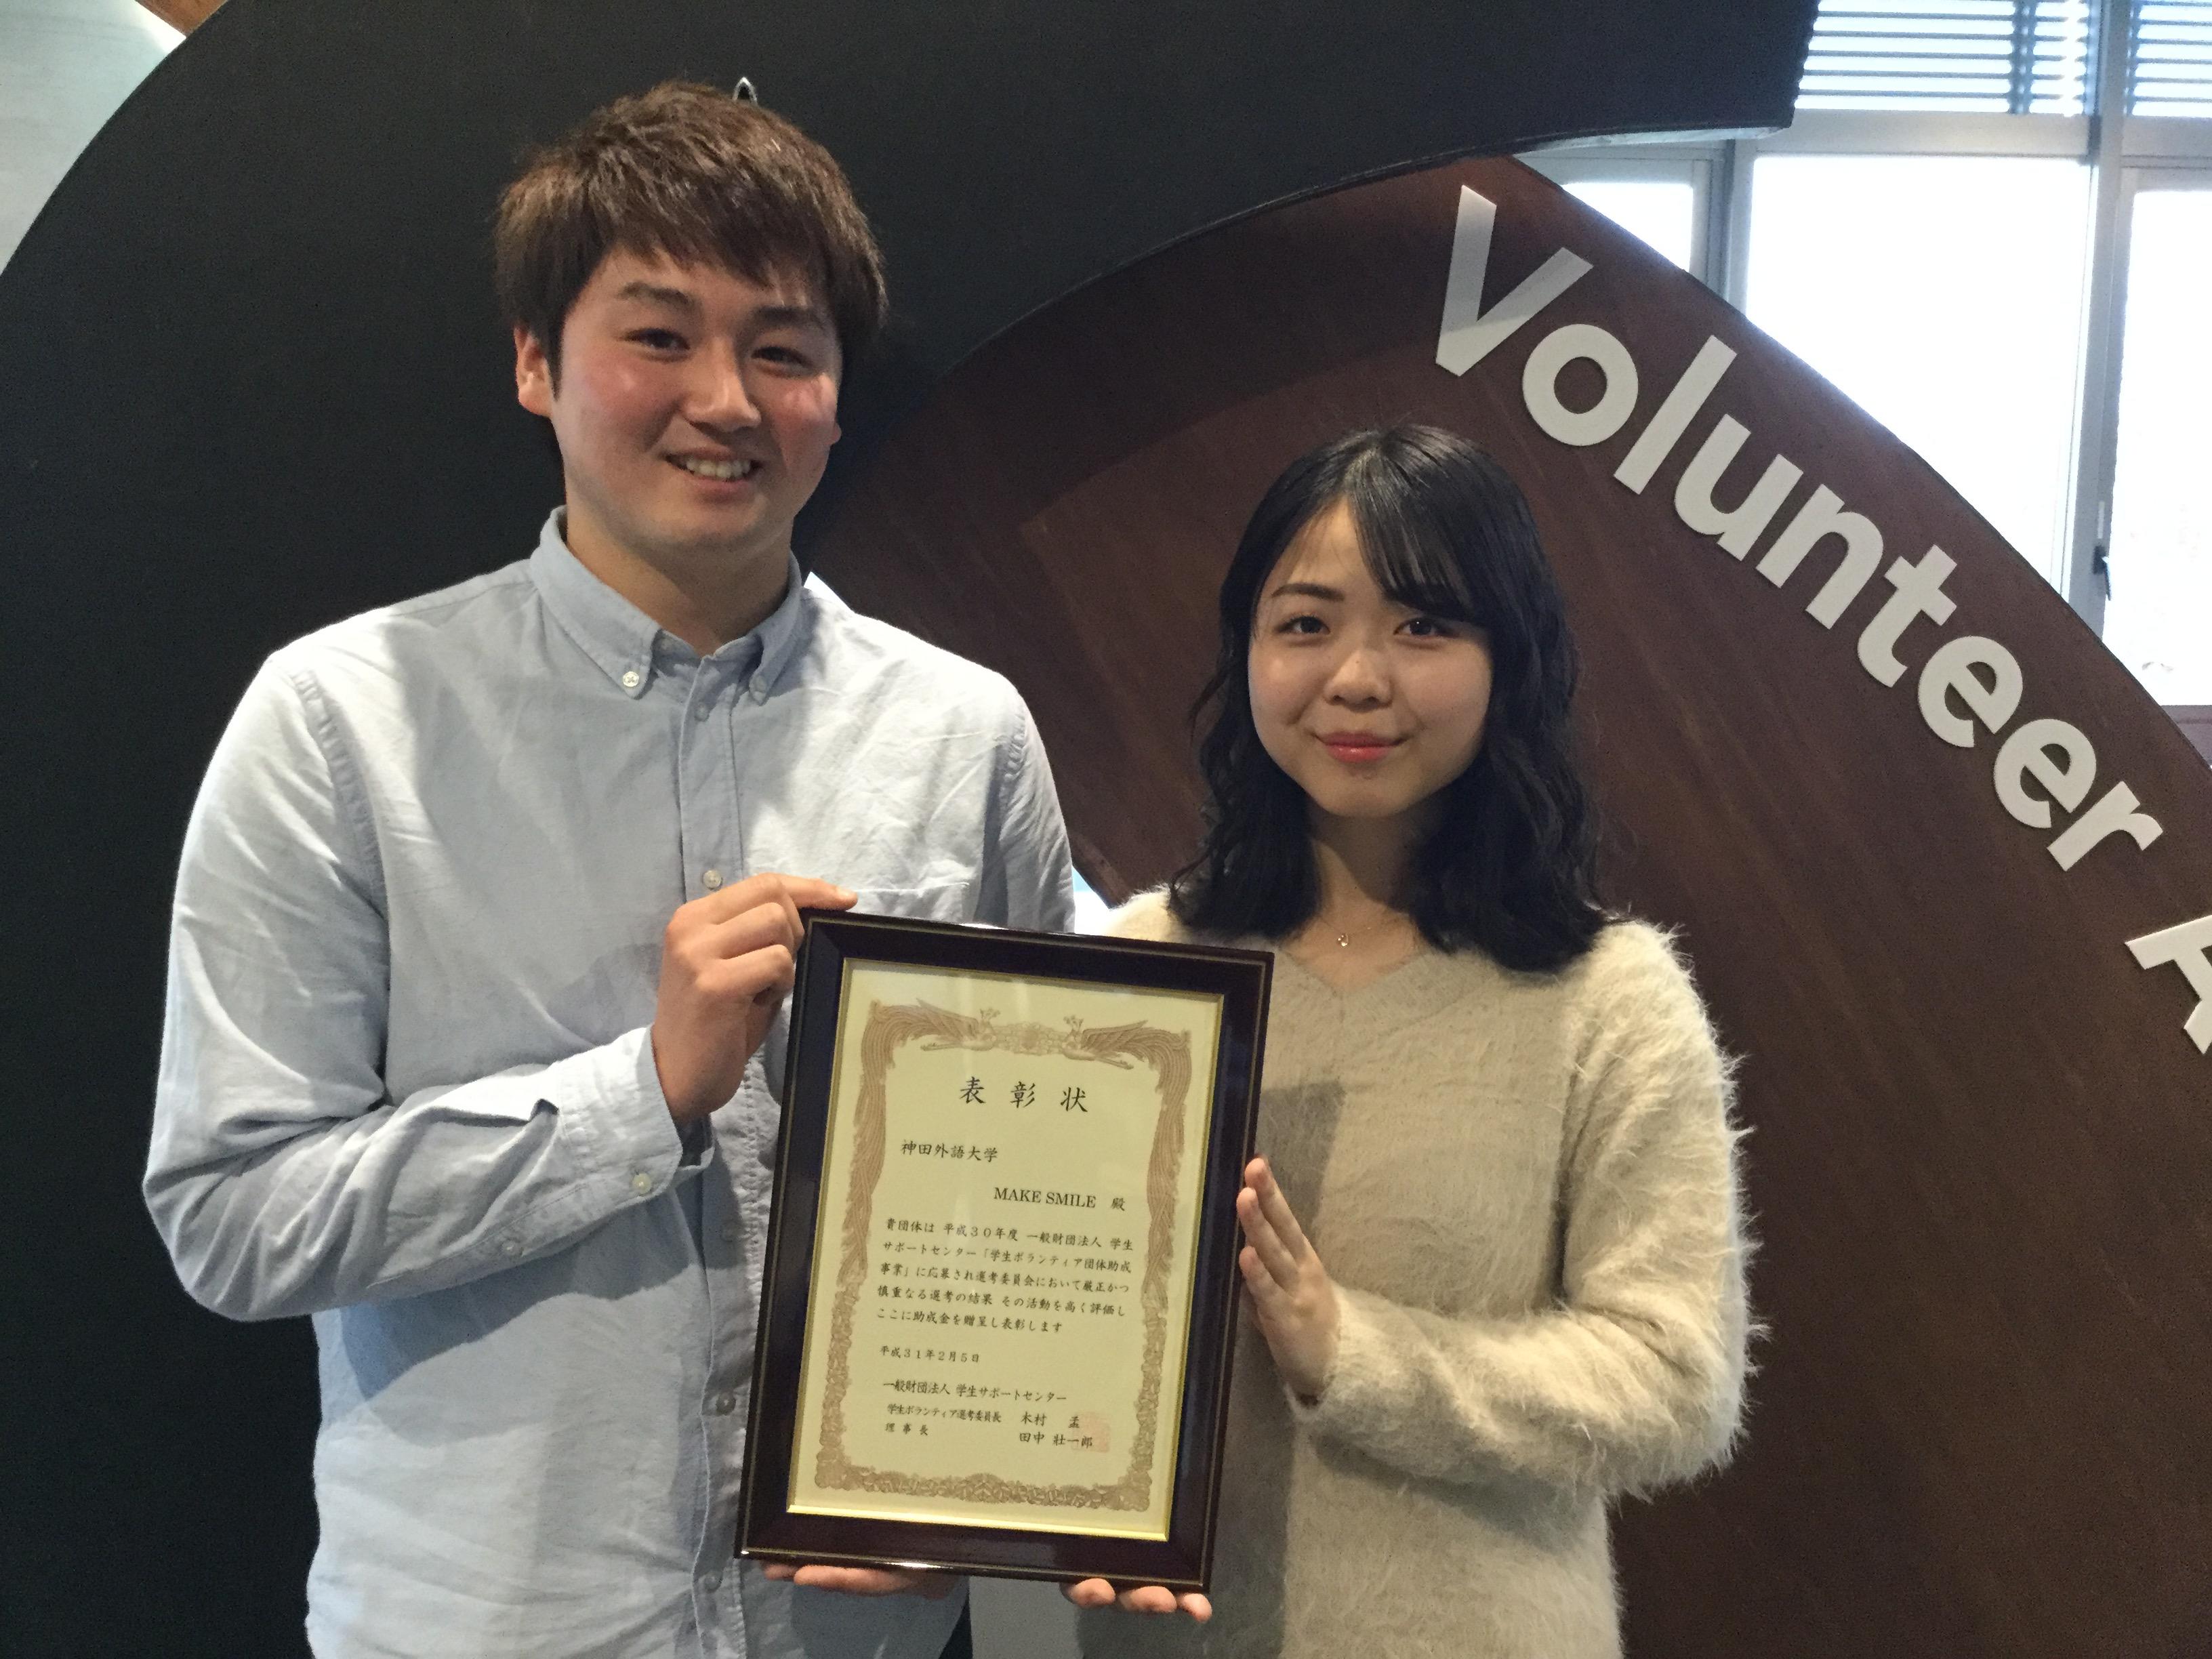 神田外語大学の災害復興支援ボランティア団体「MAKE SMILE」が、平成30年度「学生ボランティア団体助成事業」に採択